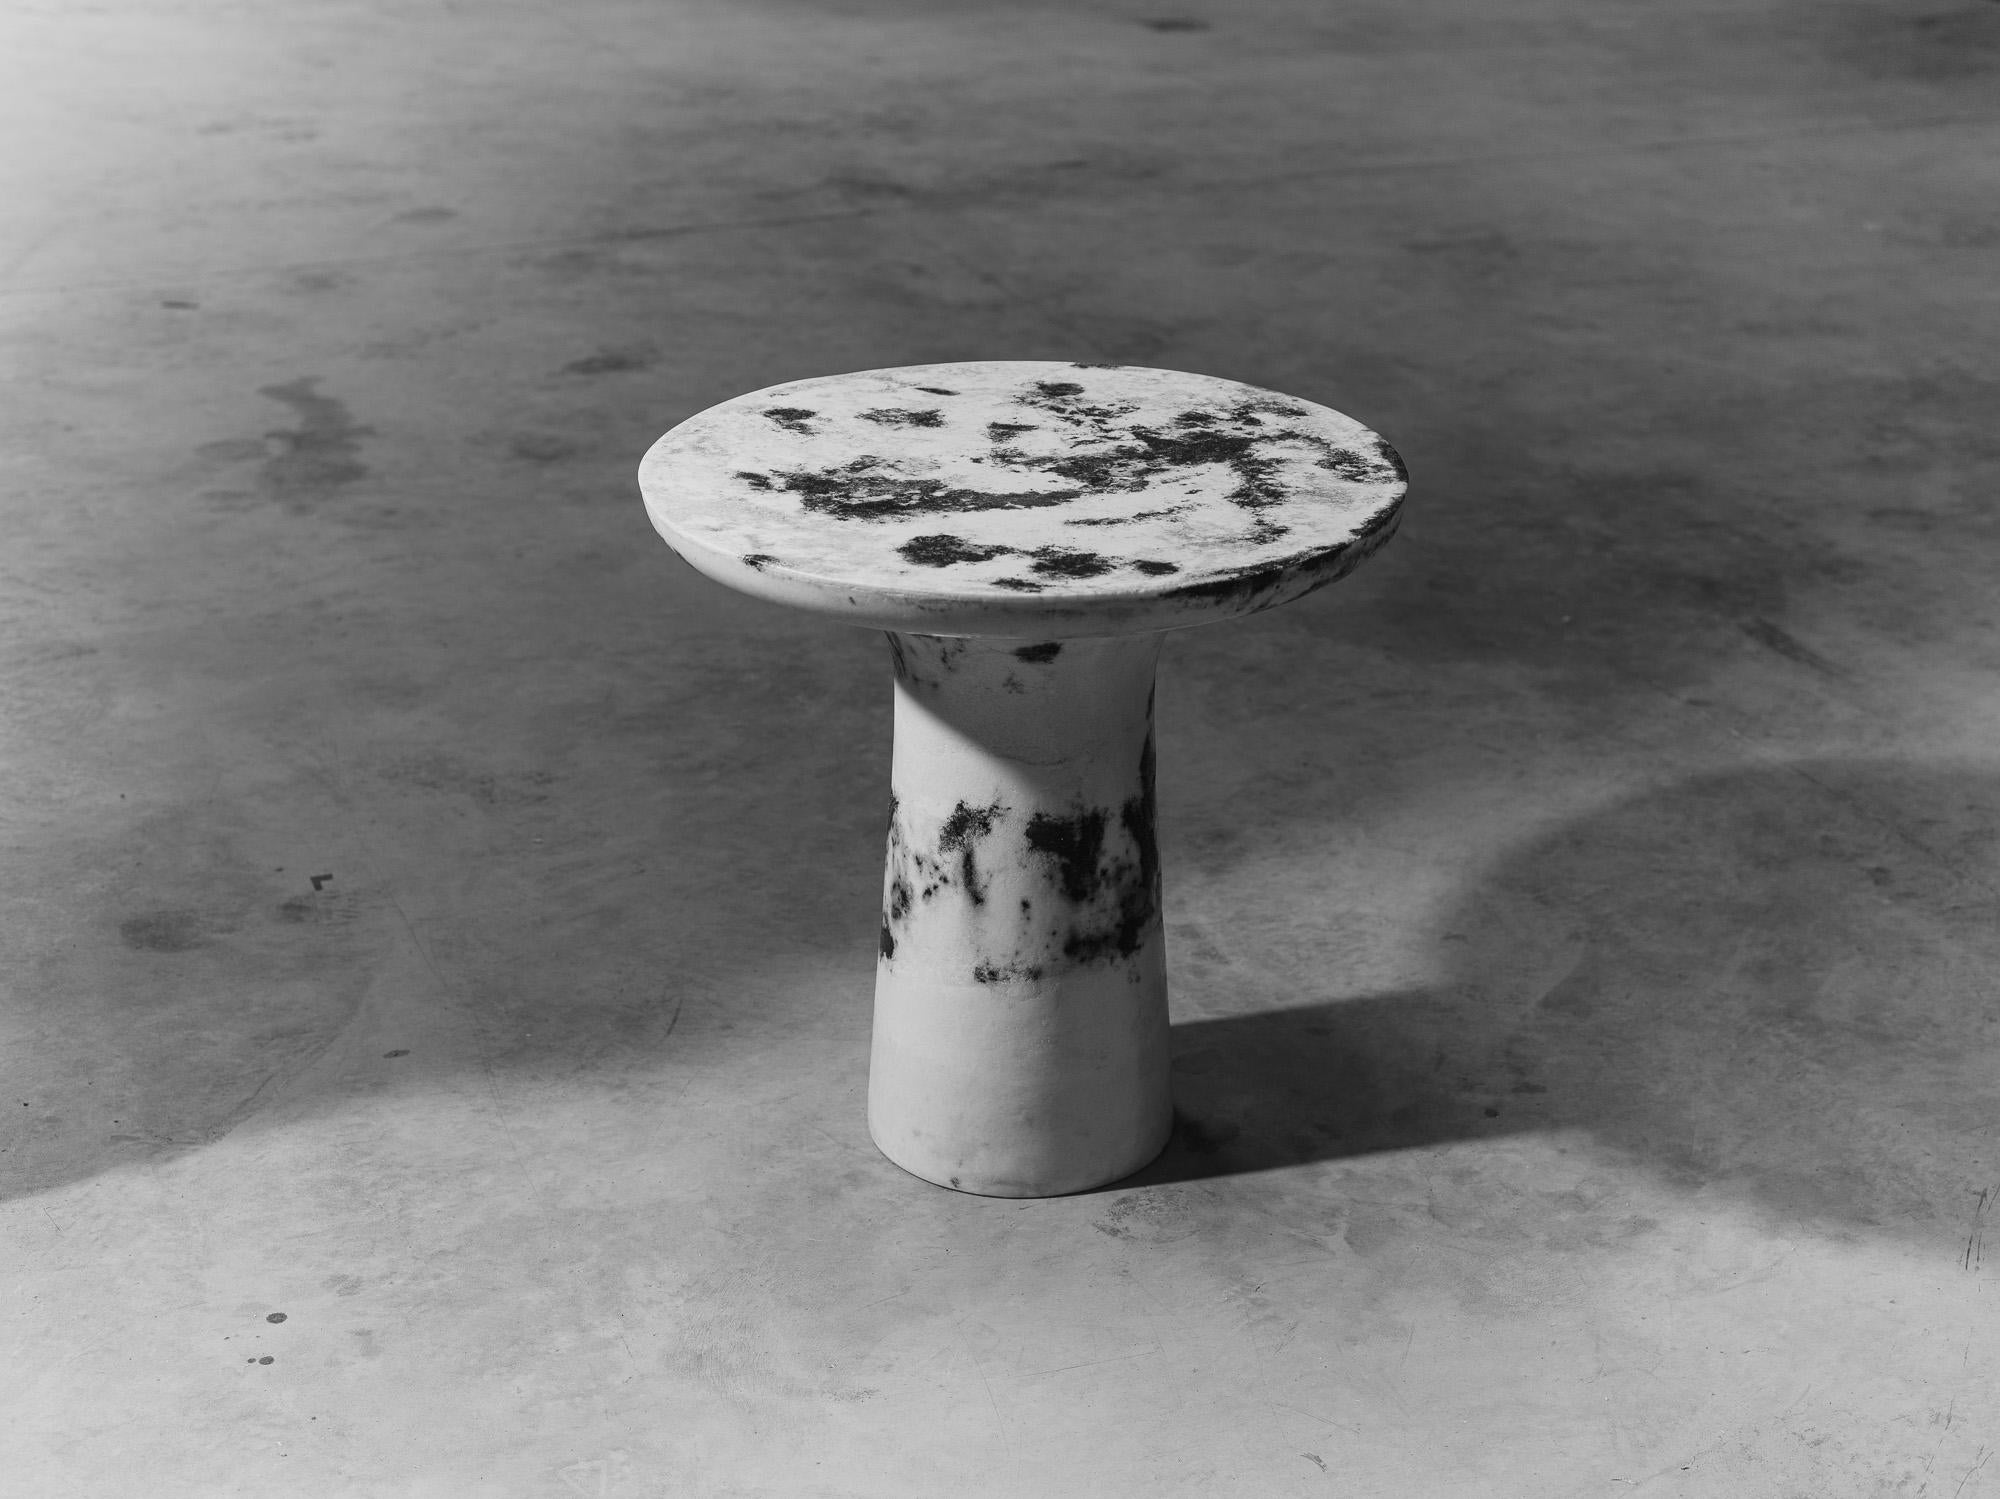 Einzigartiger Esstisch mit marmorierten Salzen, Roxane Lahidji
MATERIAL: Marmorierte Salze, eine einzigartige, preisgekrönte Technik, entwickelt von Roxane Lahidji
Abmessungen: 70 x 70 x 70 cm
Einzigartiger Esstisch, signiert.

Preisträger der Bolia